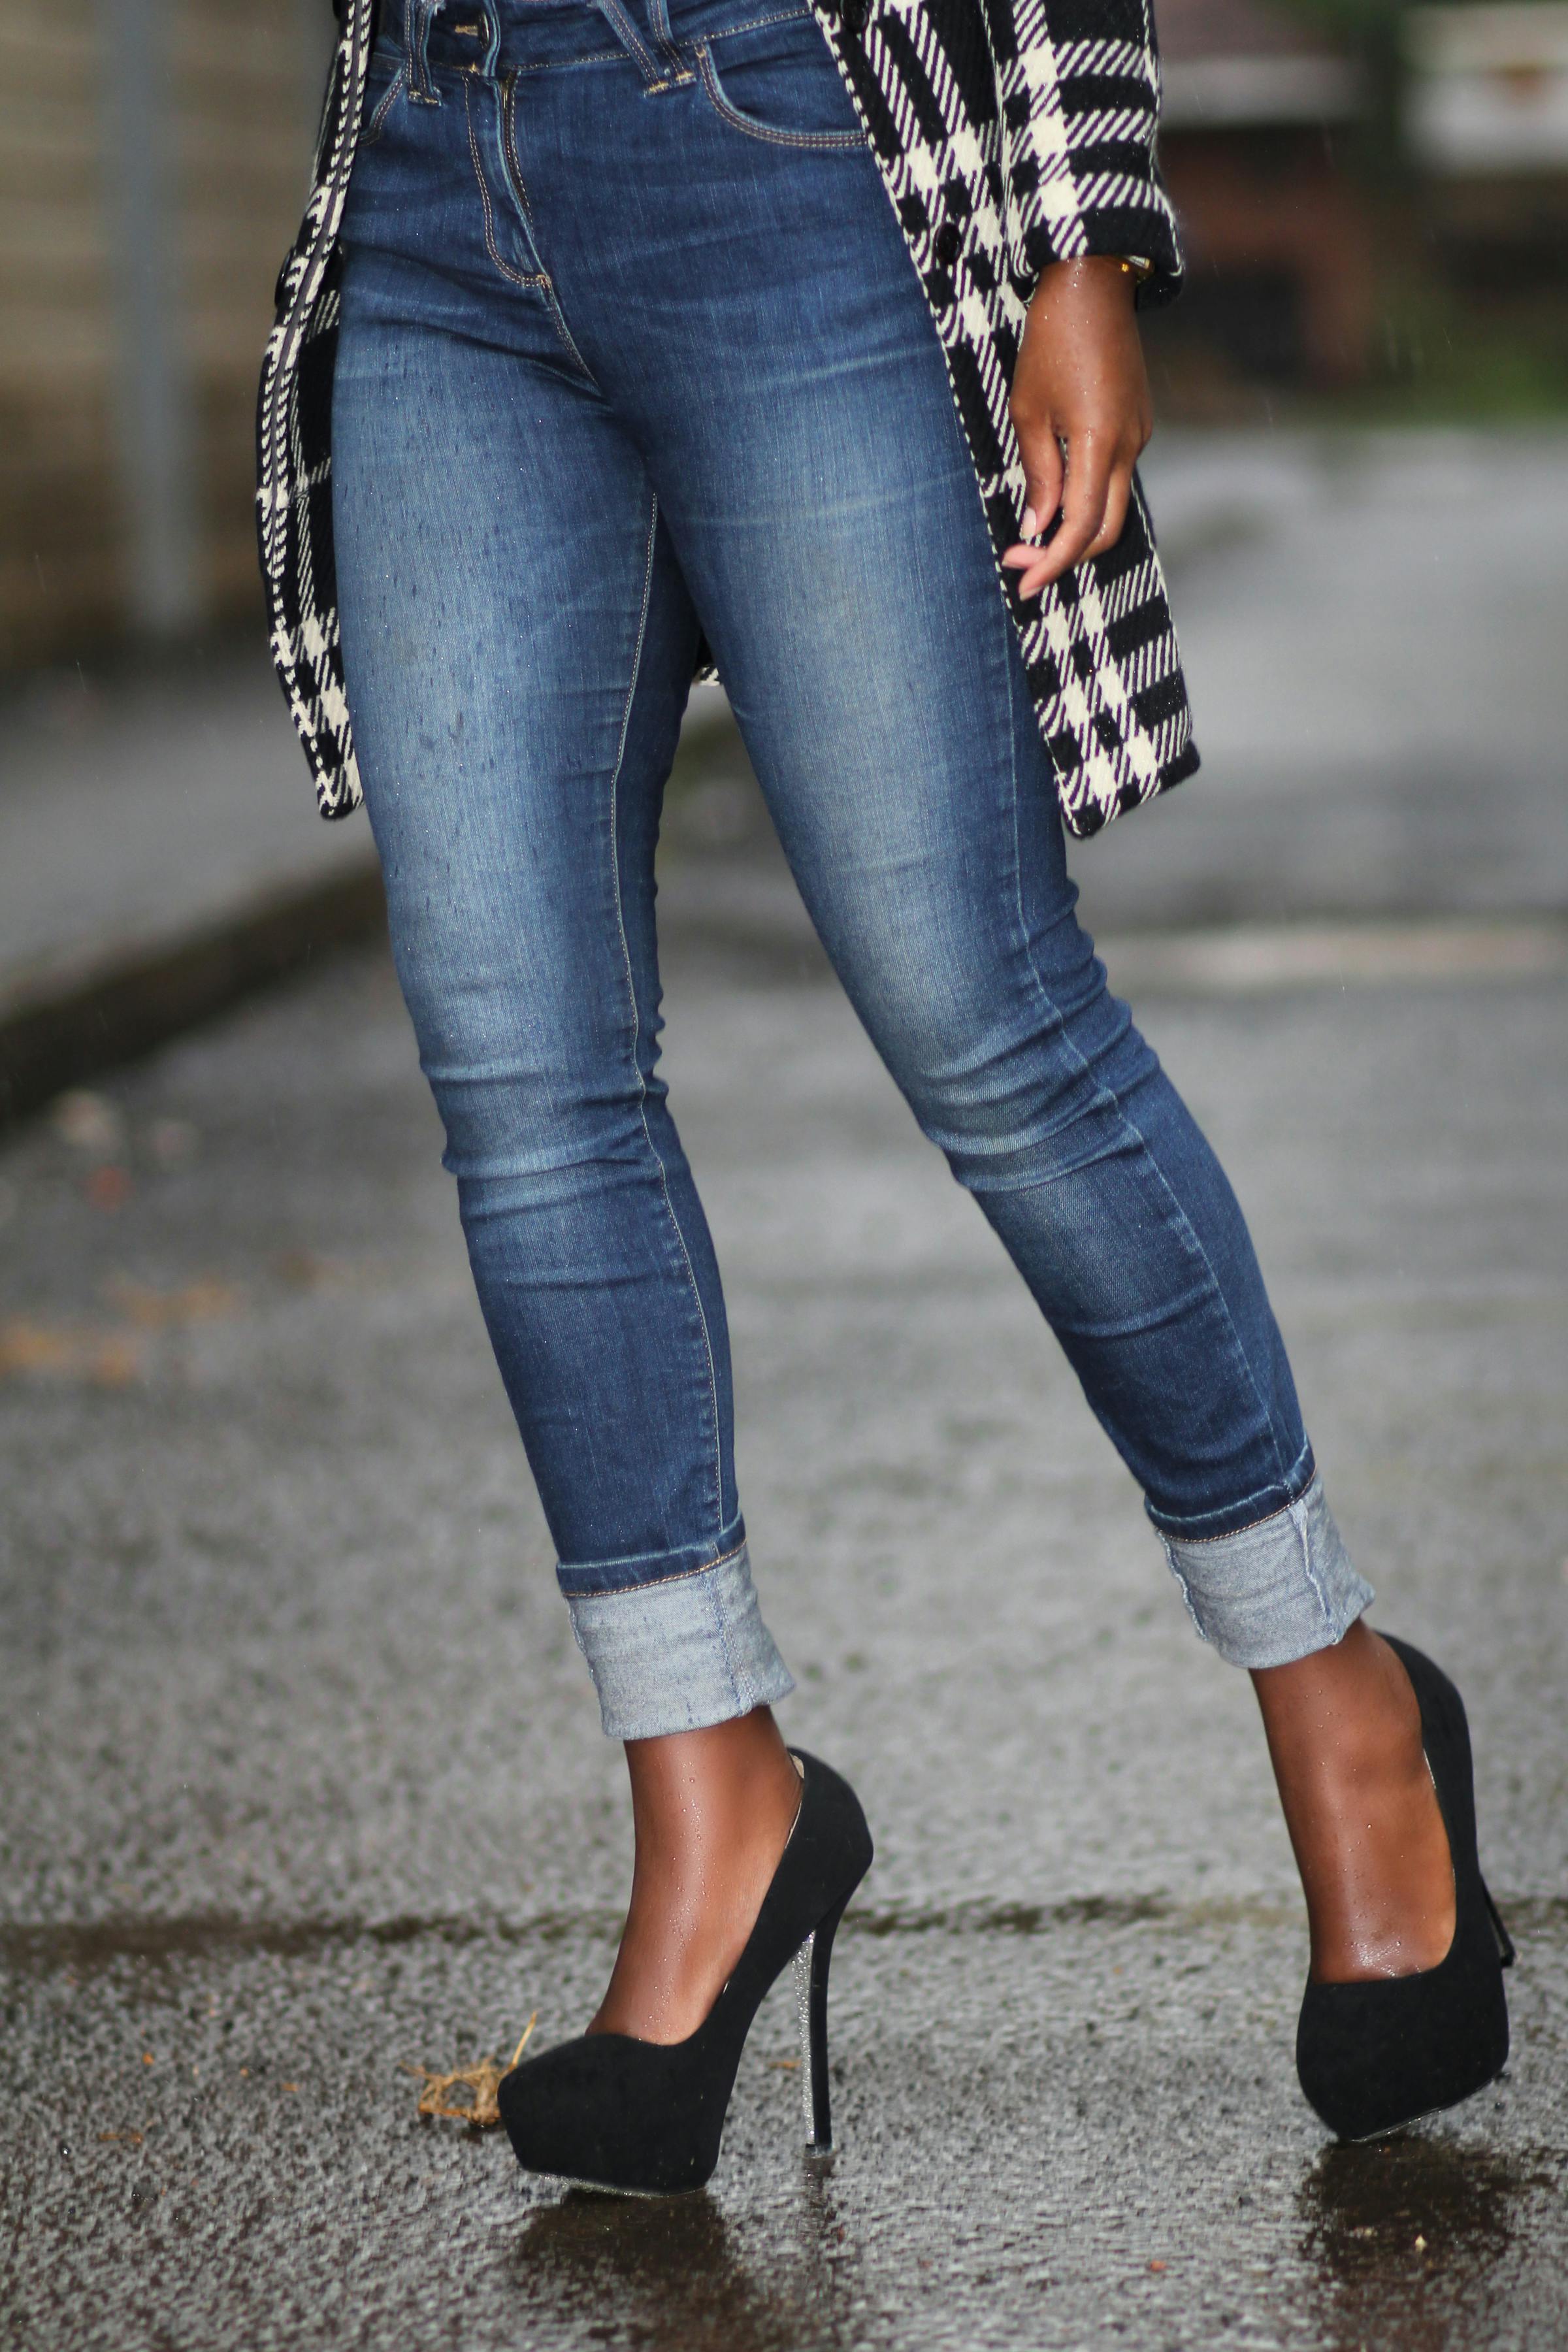 Simple black heels. Blue jeans. : r/HighHeels